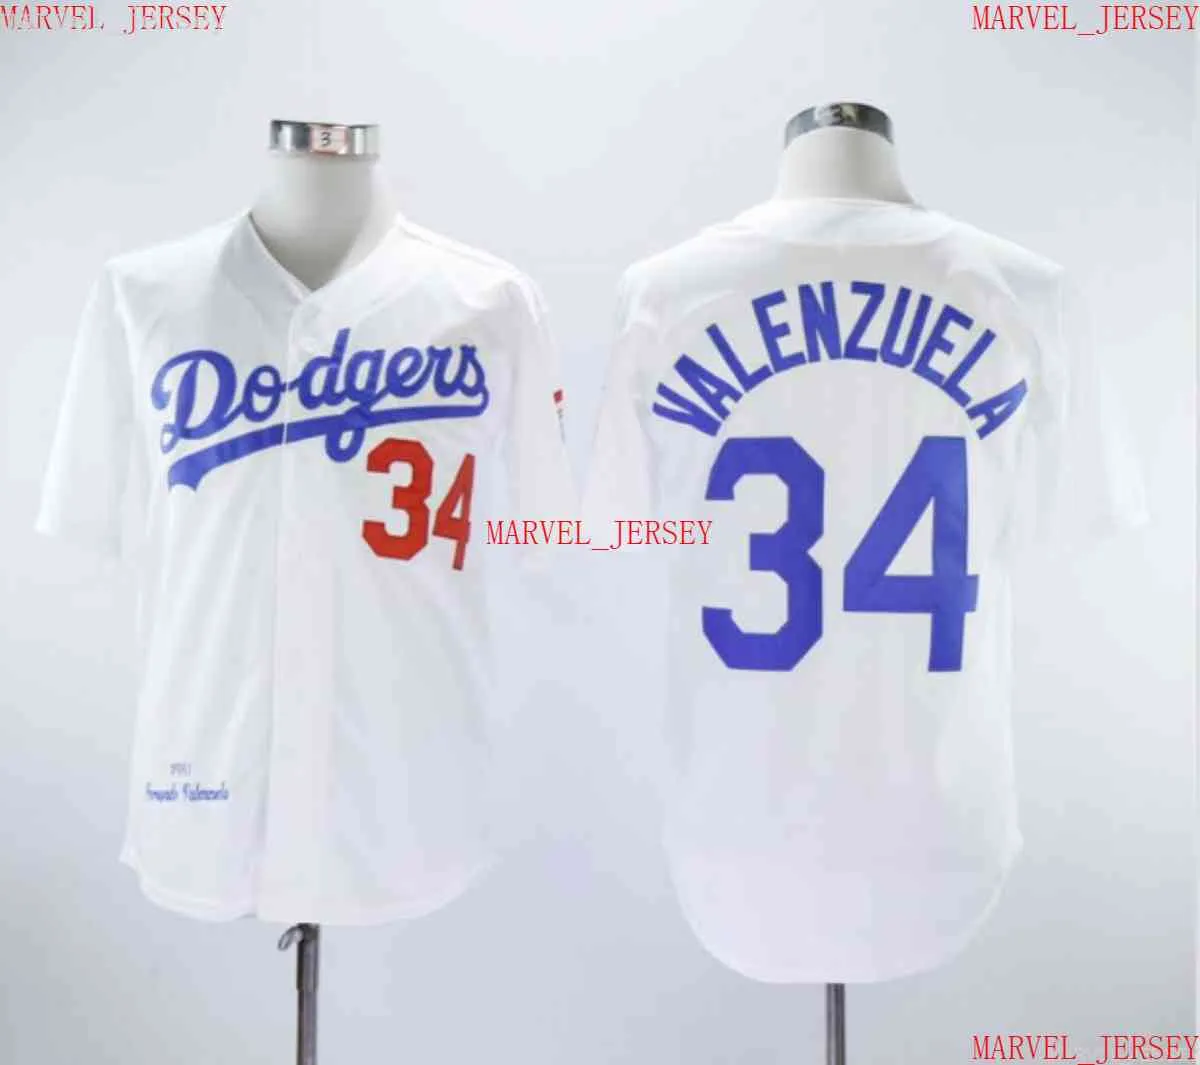 Män kvinnor ungdom Fernando Valenzuela basebolltröjor syade anpassa valfritt namn nummer jersey xs-5xl